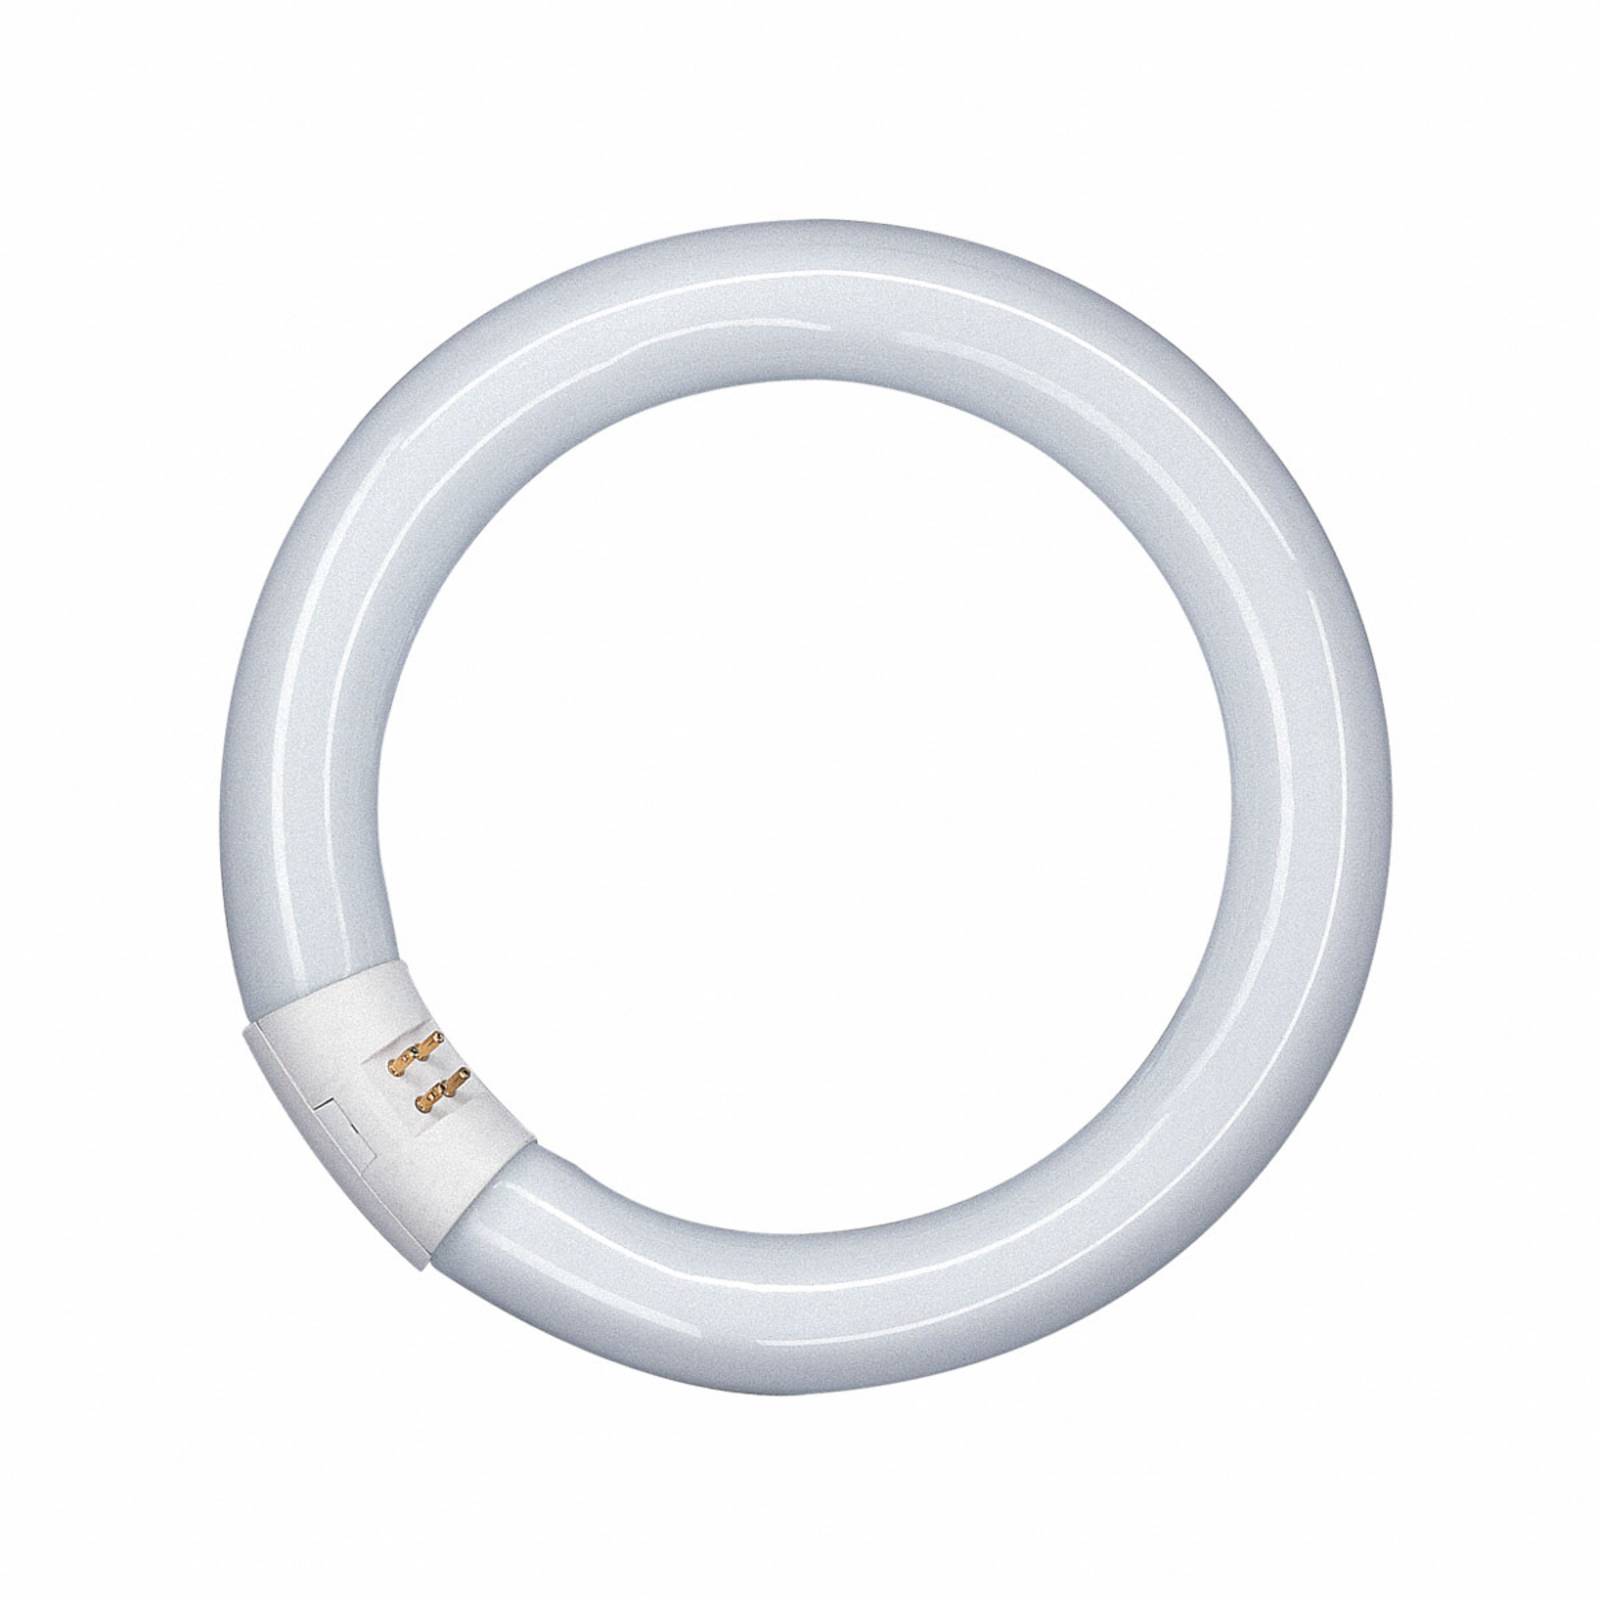 G10q 40W 865 Lumilux T9C fluoreszkáló gyűrű